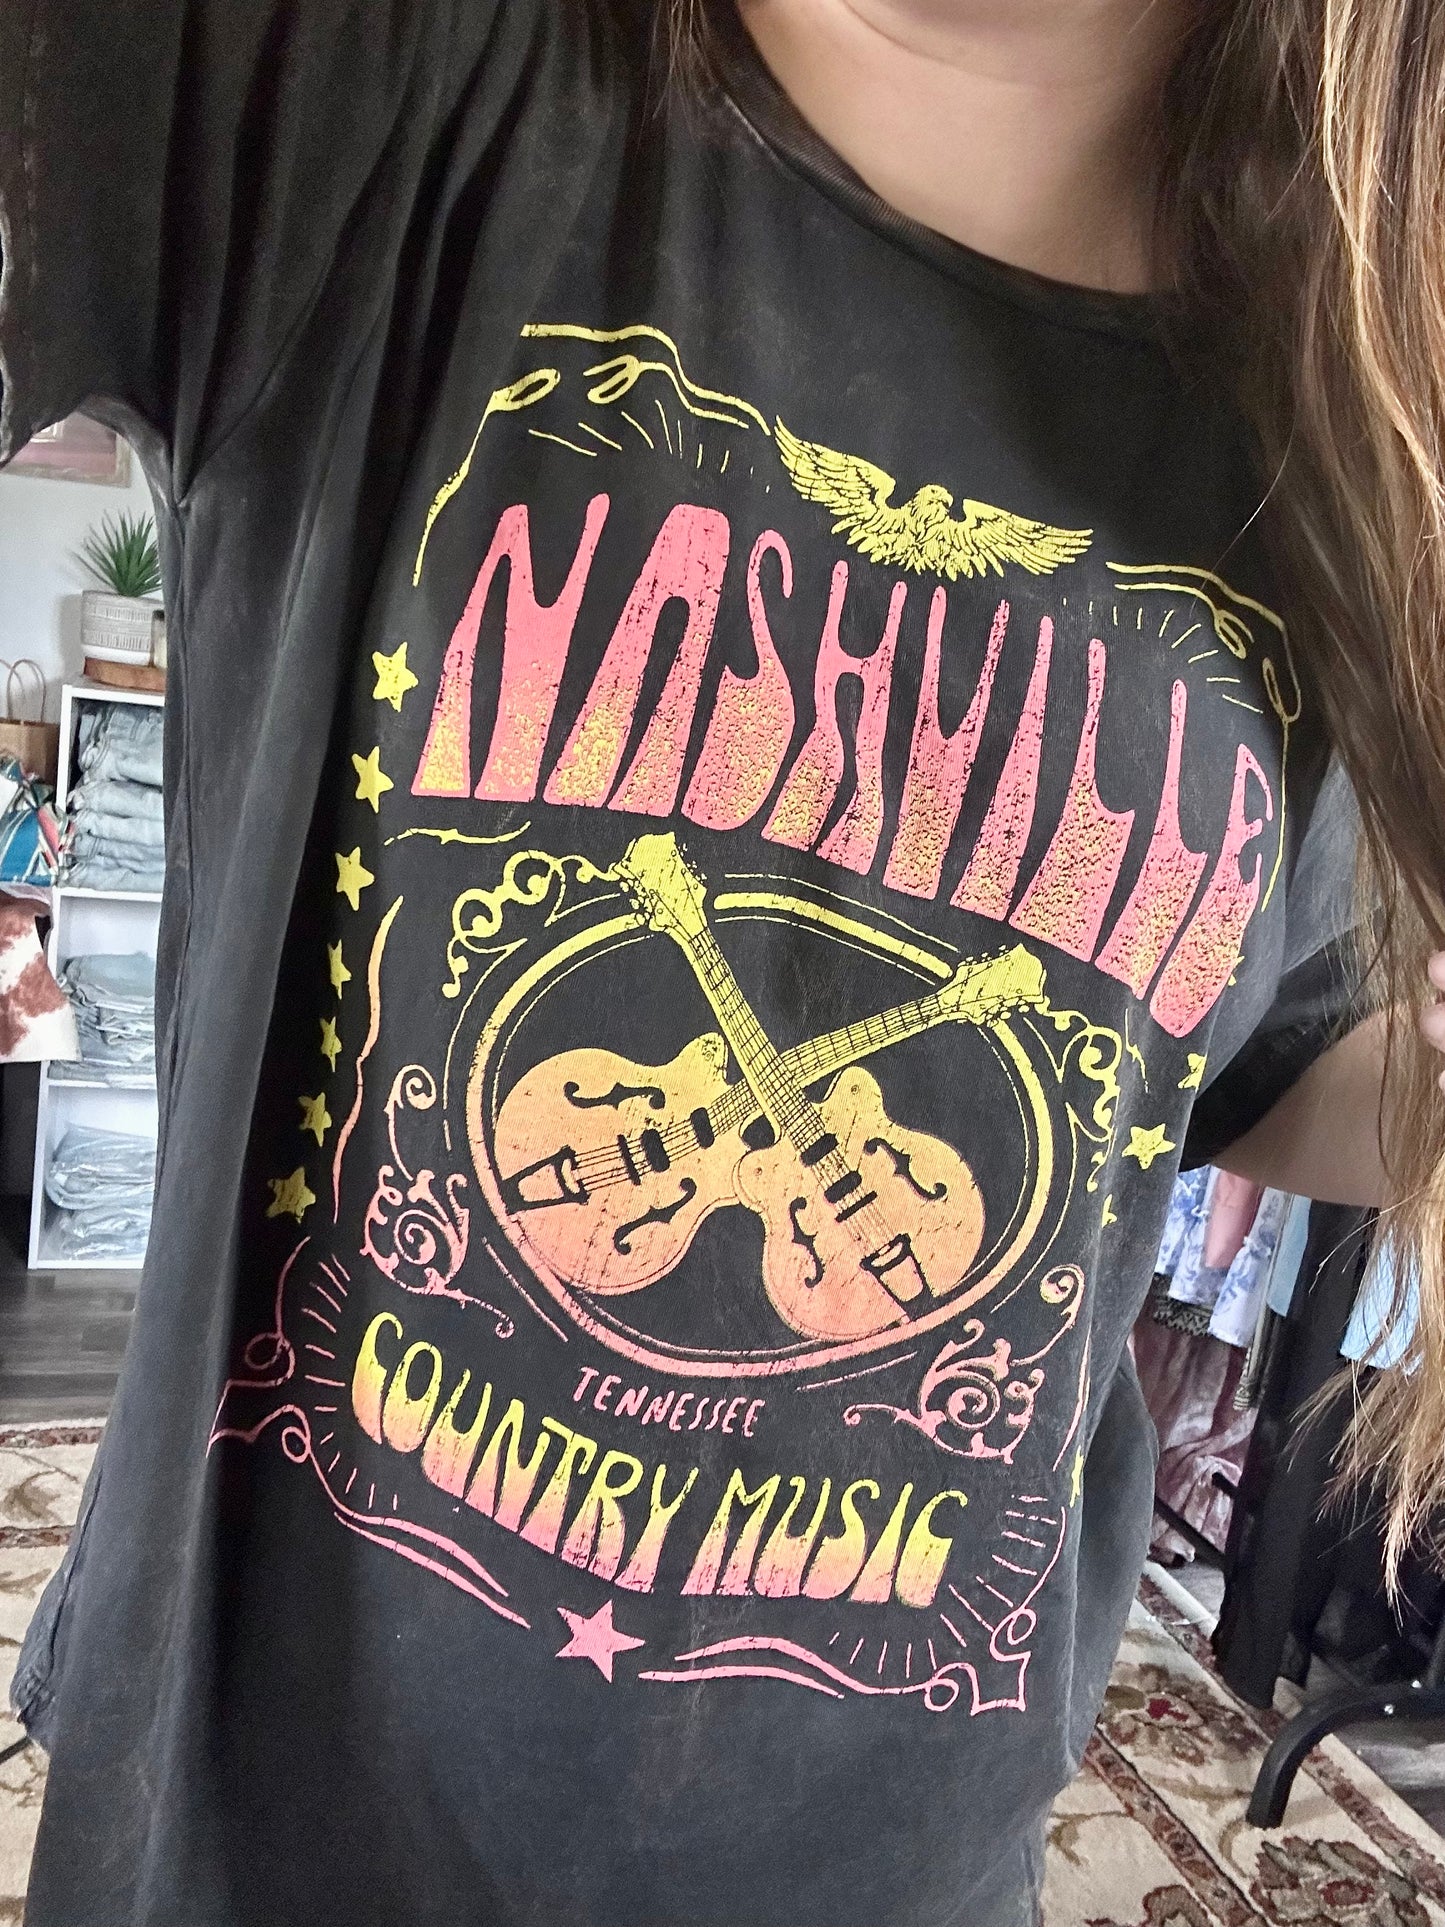 Nashville Oversized tee